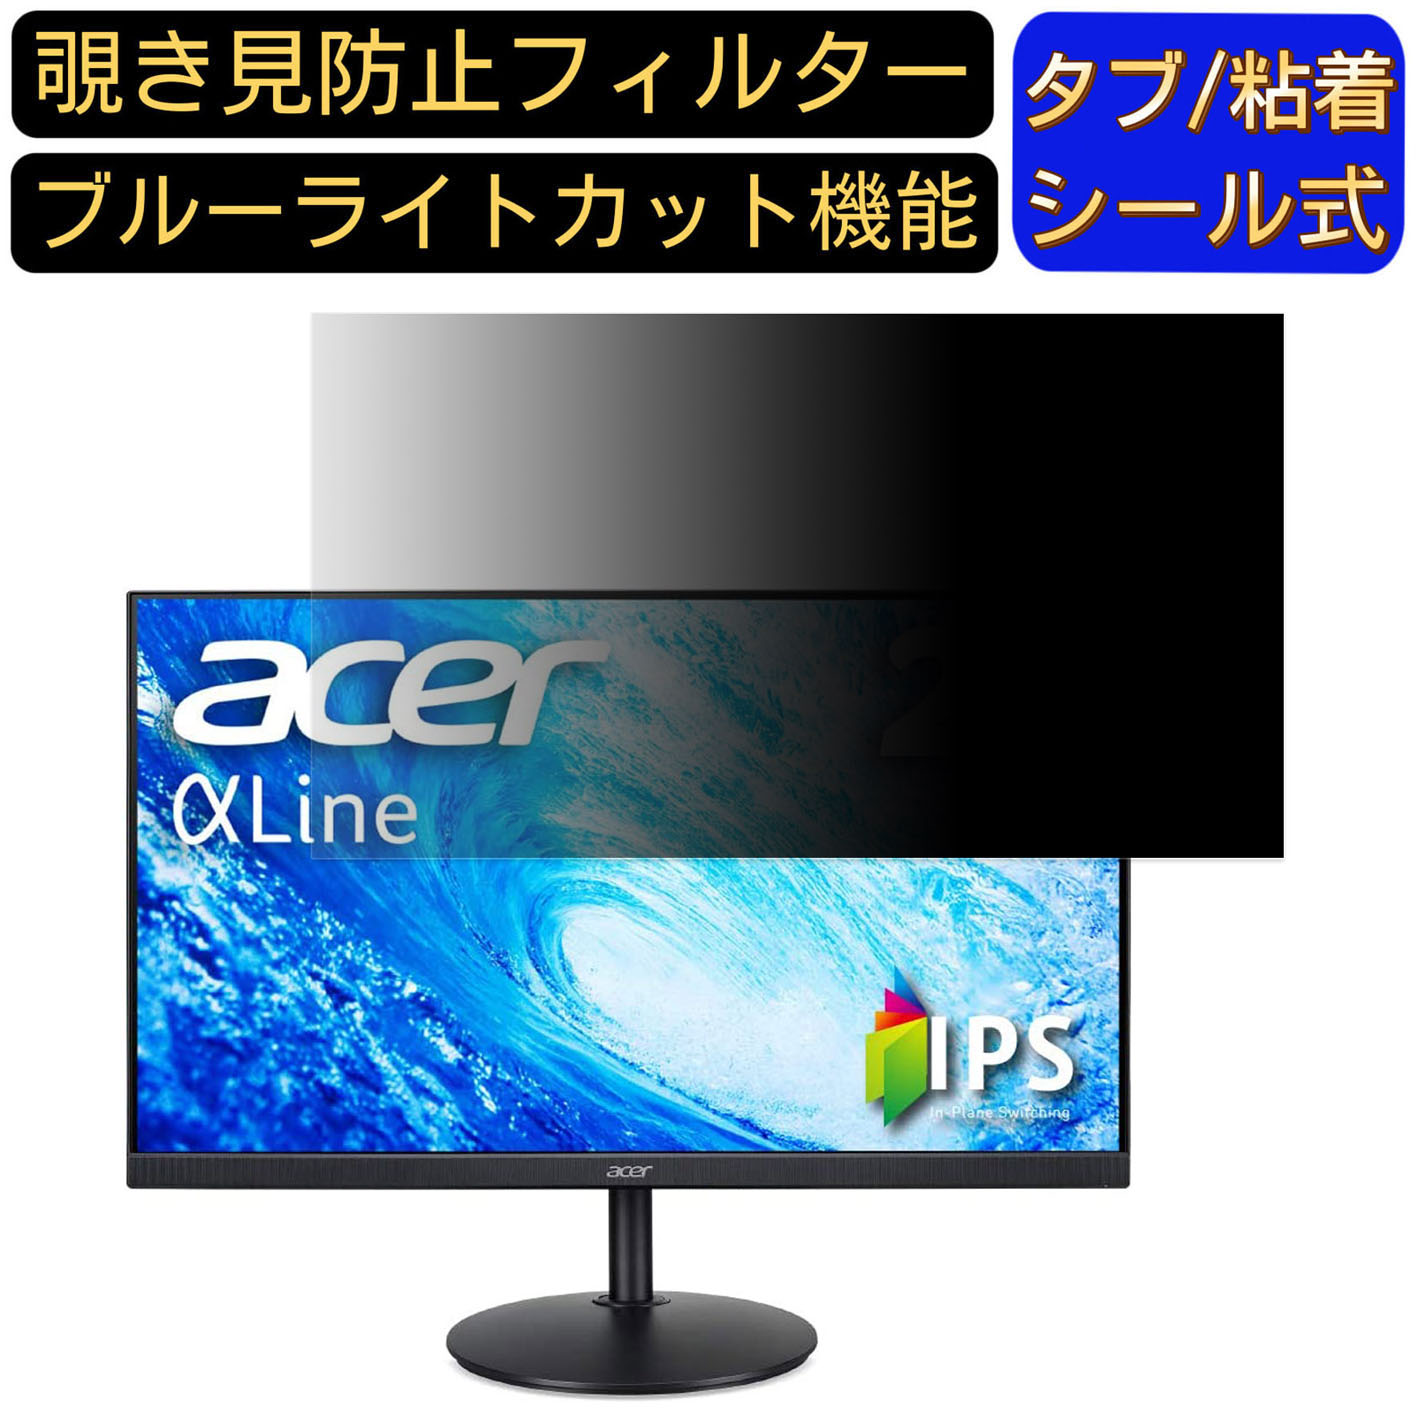 【ポイント2倍】Acer AlphaLine CB272bmiprx